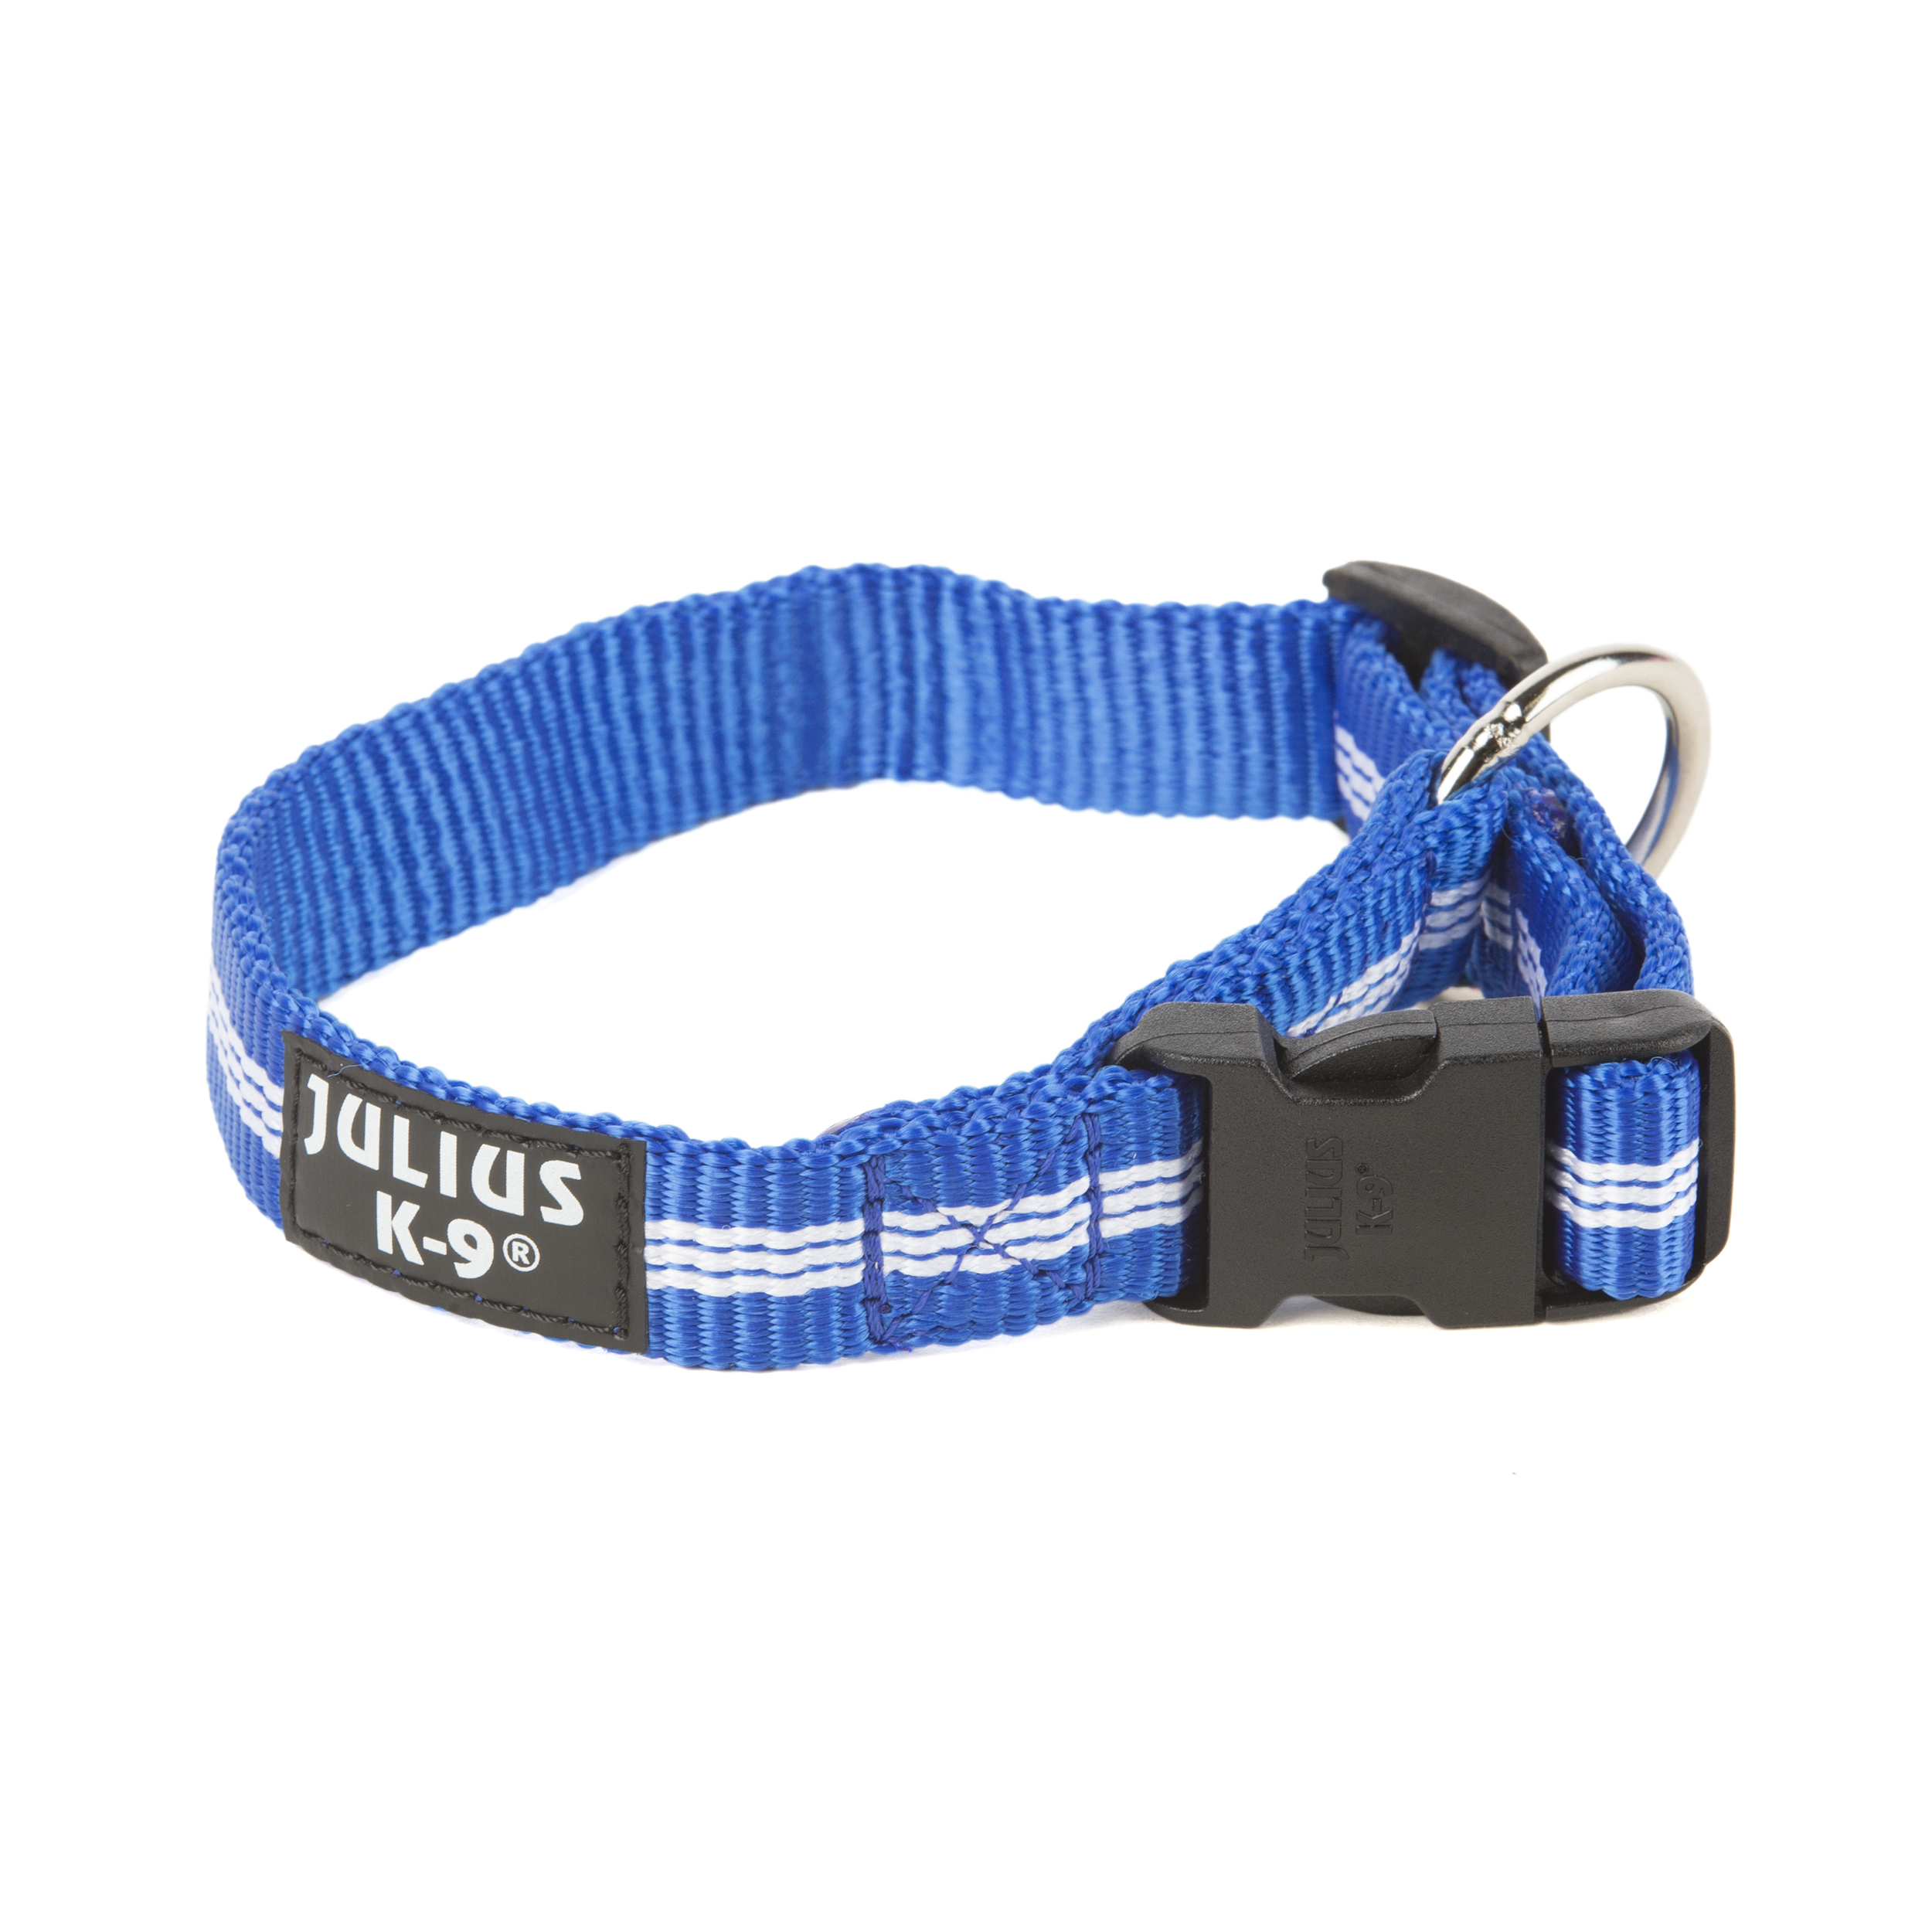 Julius-K9 IDC Halsband 27-42 Cm